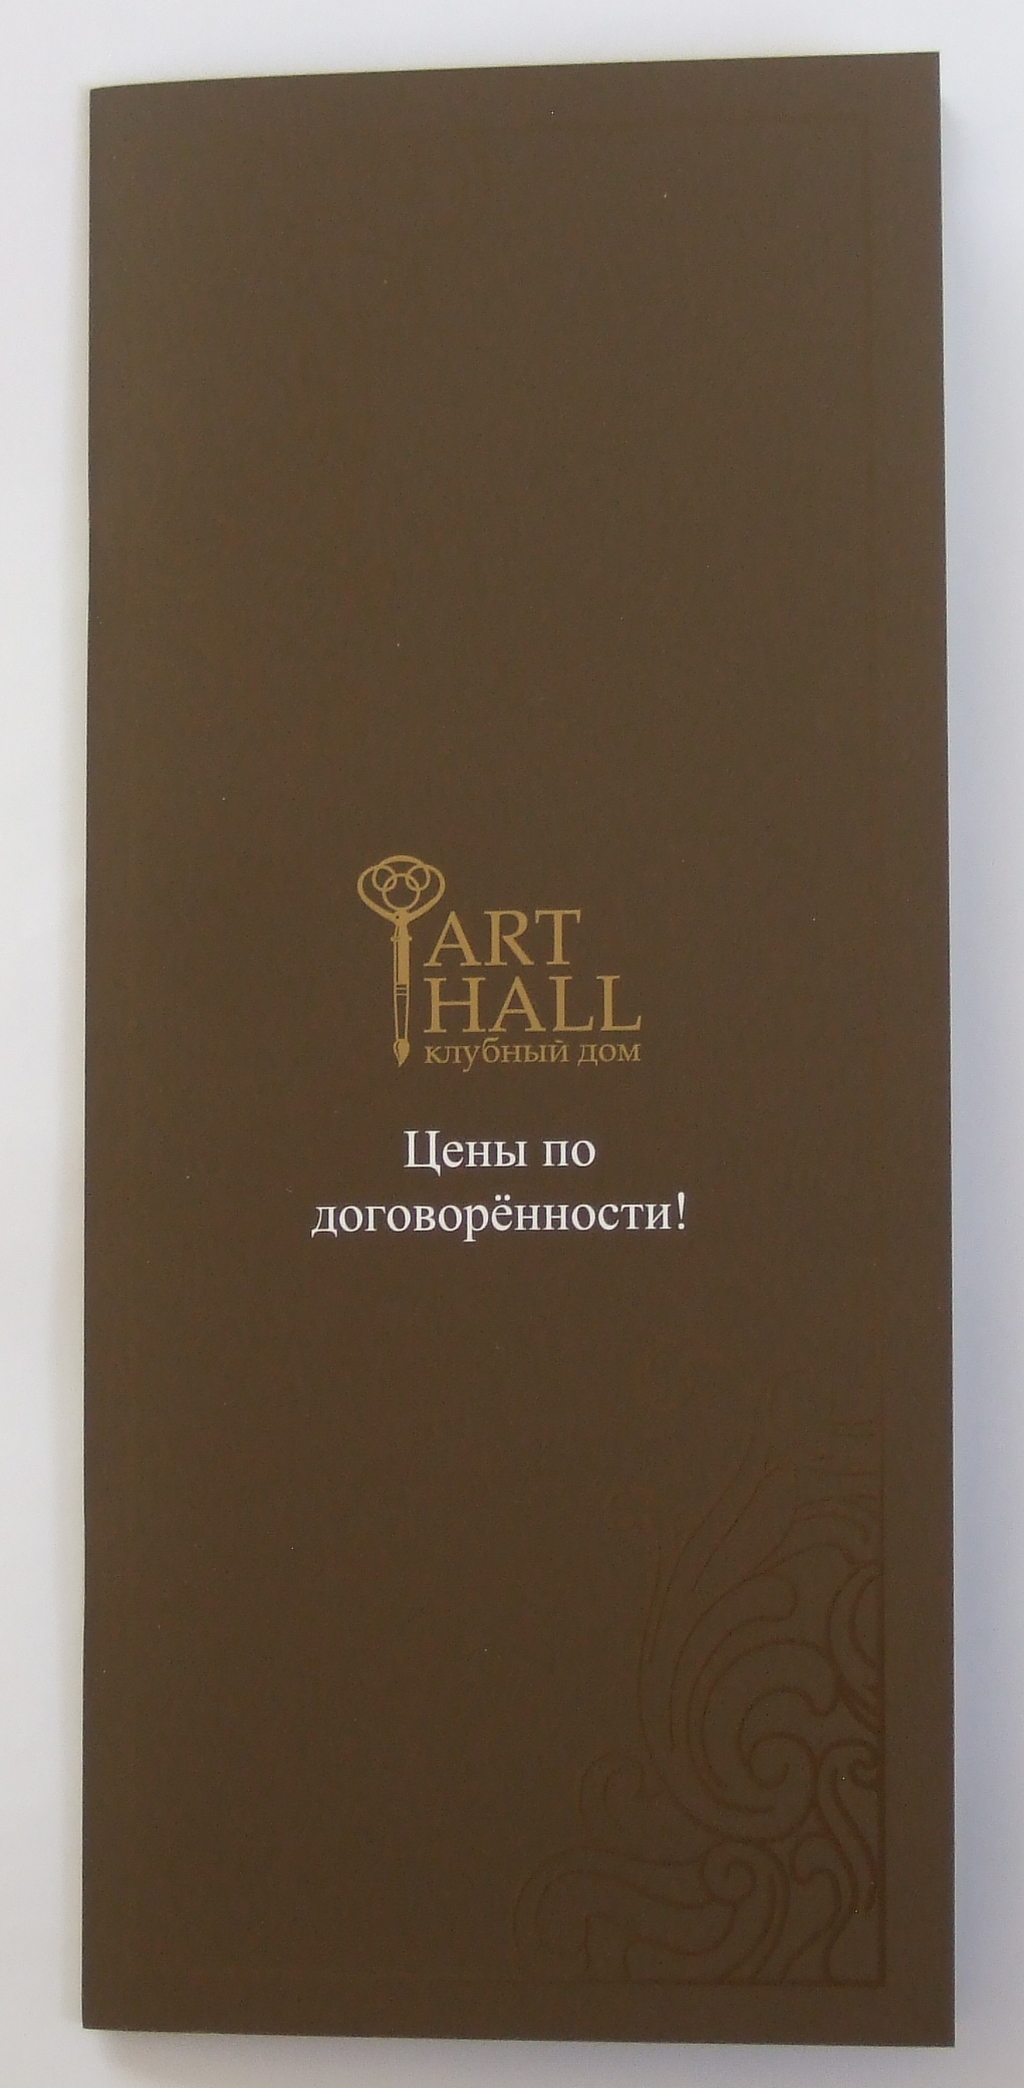 Печать каталогов «Art Hall». Полиграфия типографии Макрос, изготовление каталогов, спецификация 964973-1